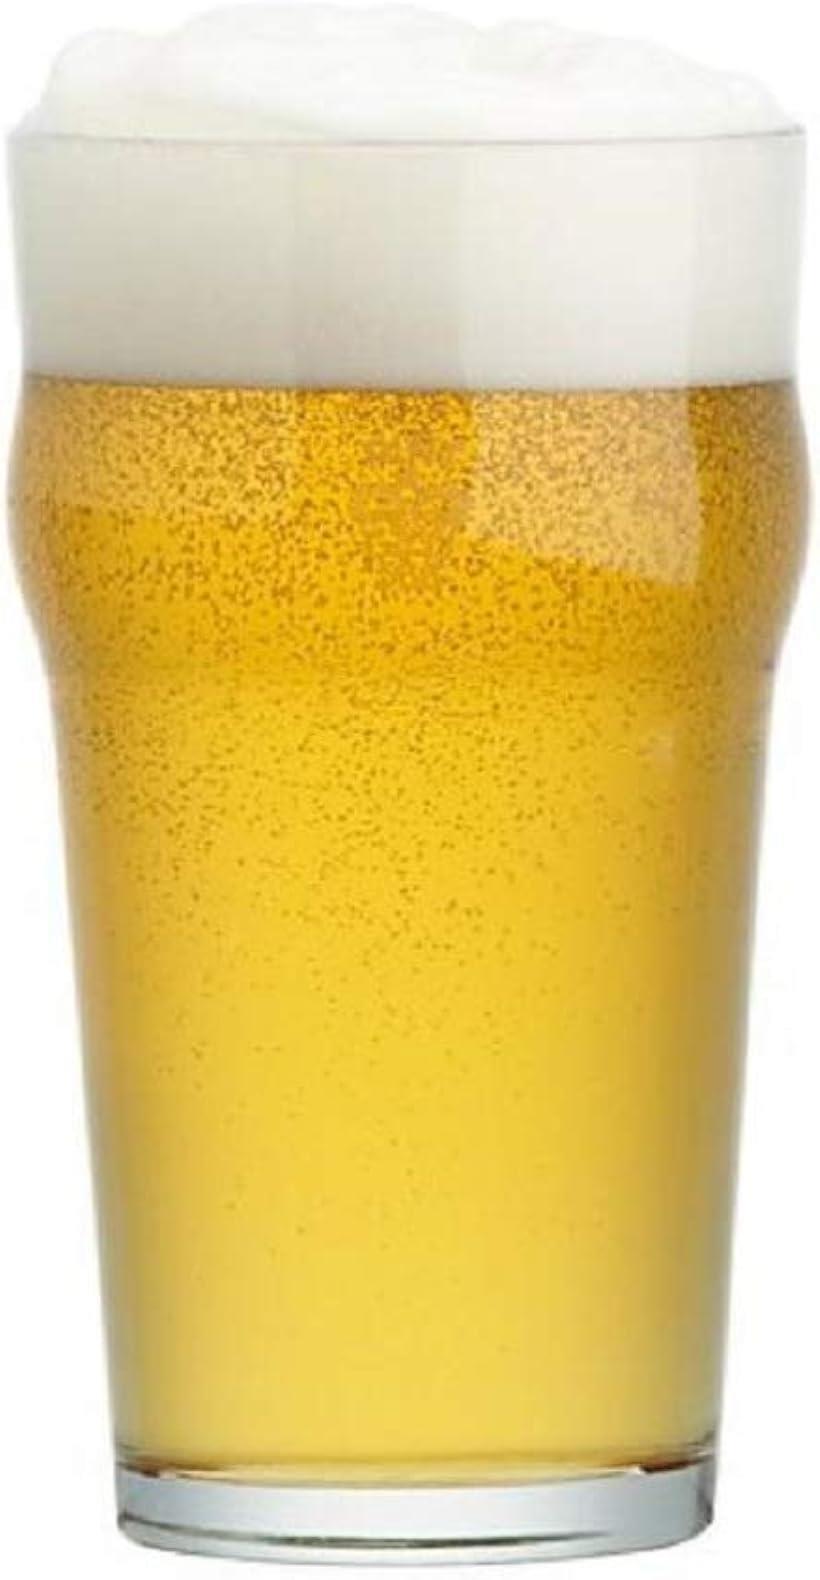 moring place ビール パイント グラス 英国 ビールグラス インペリアルビールグラス イングリッシュパブスタイル 20oz( 1個)